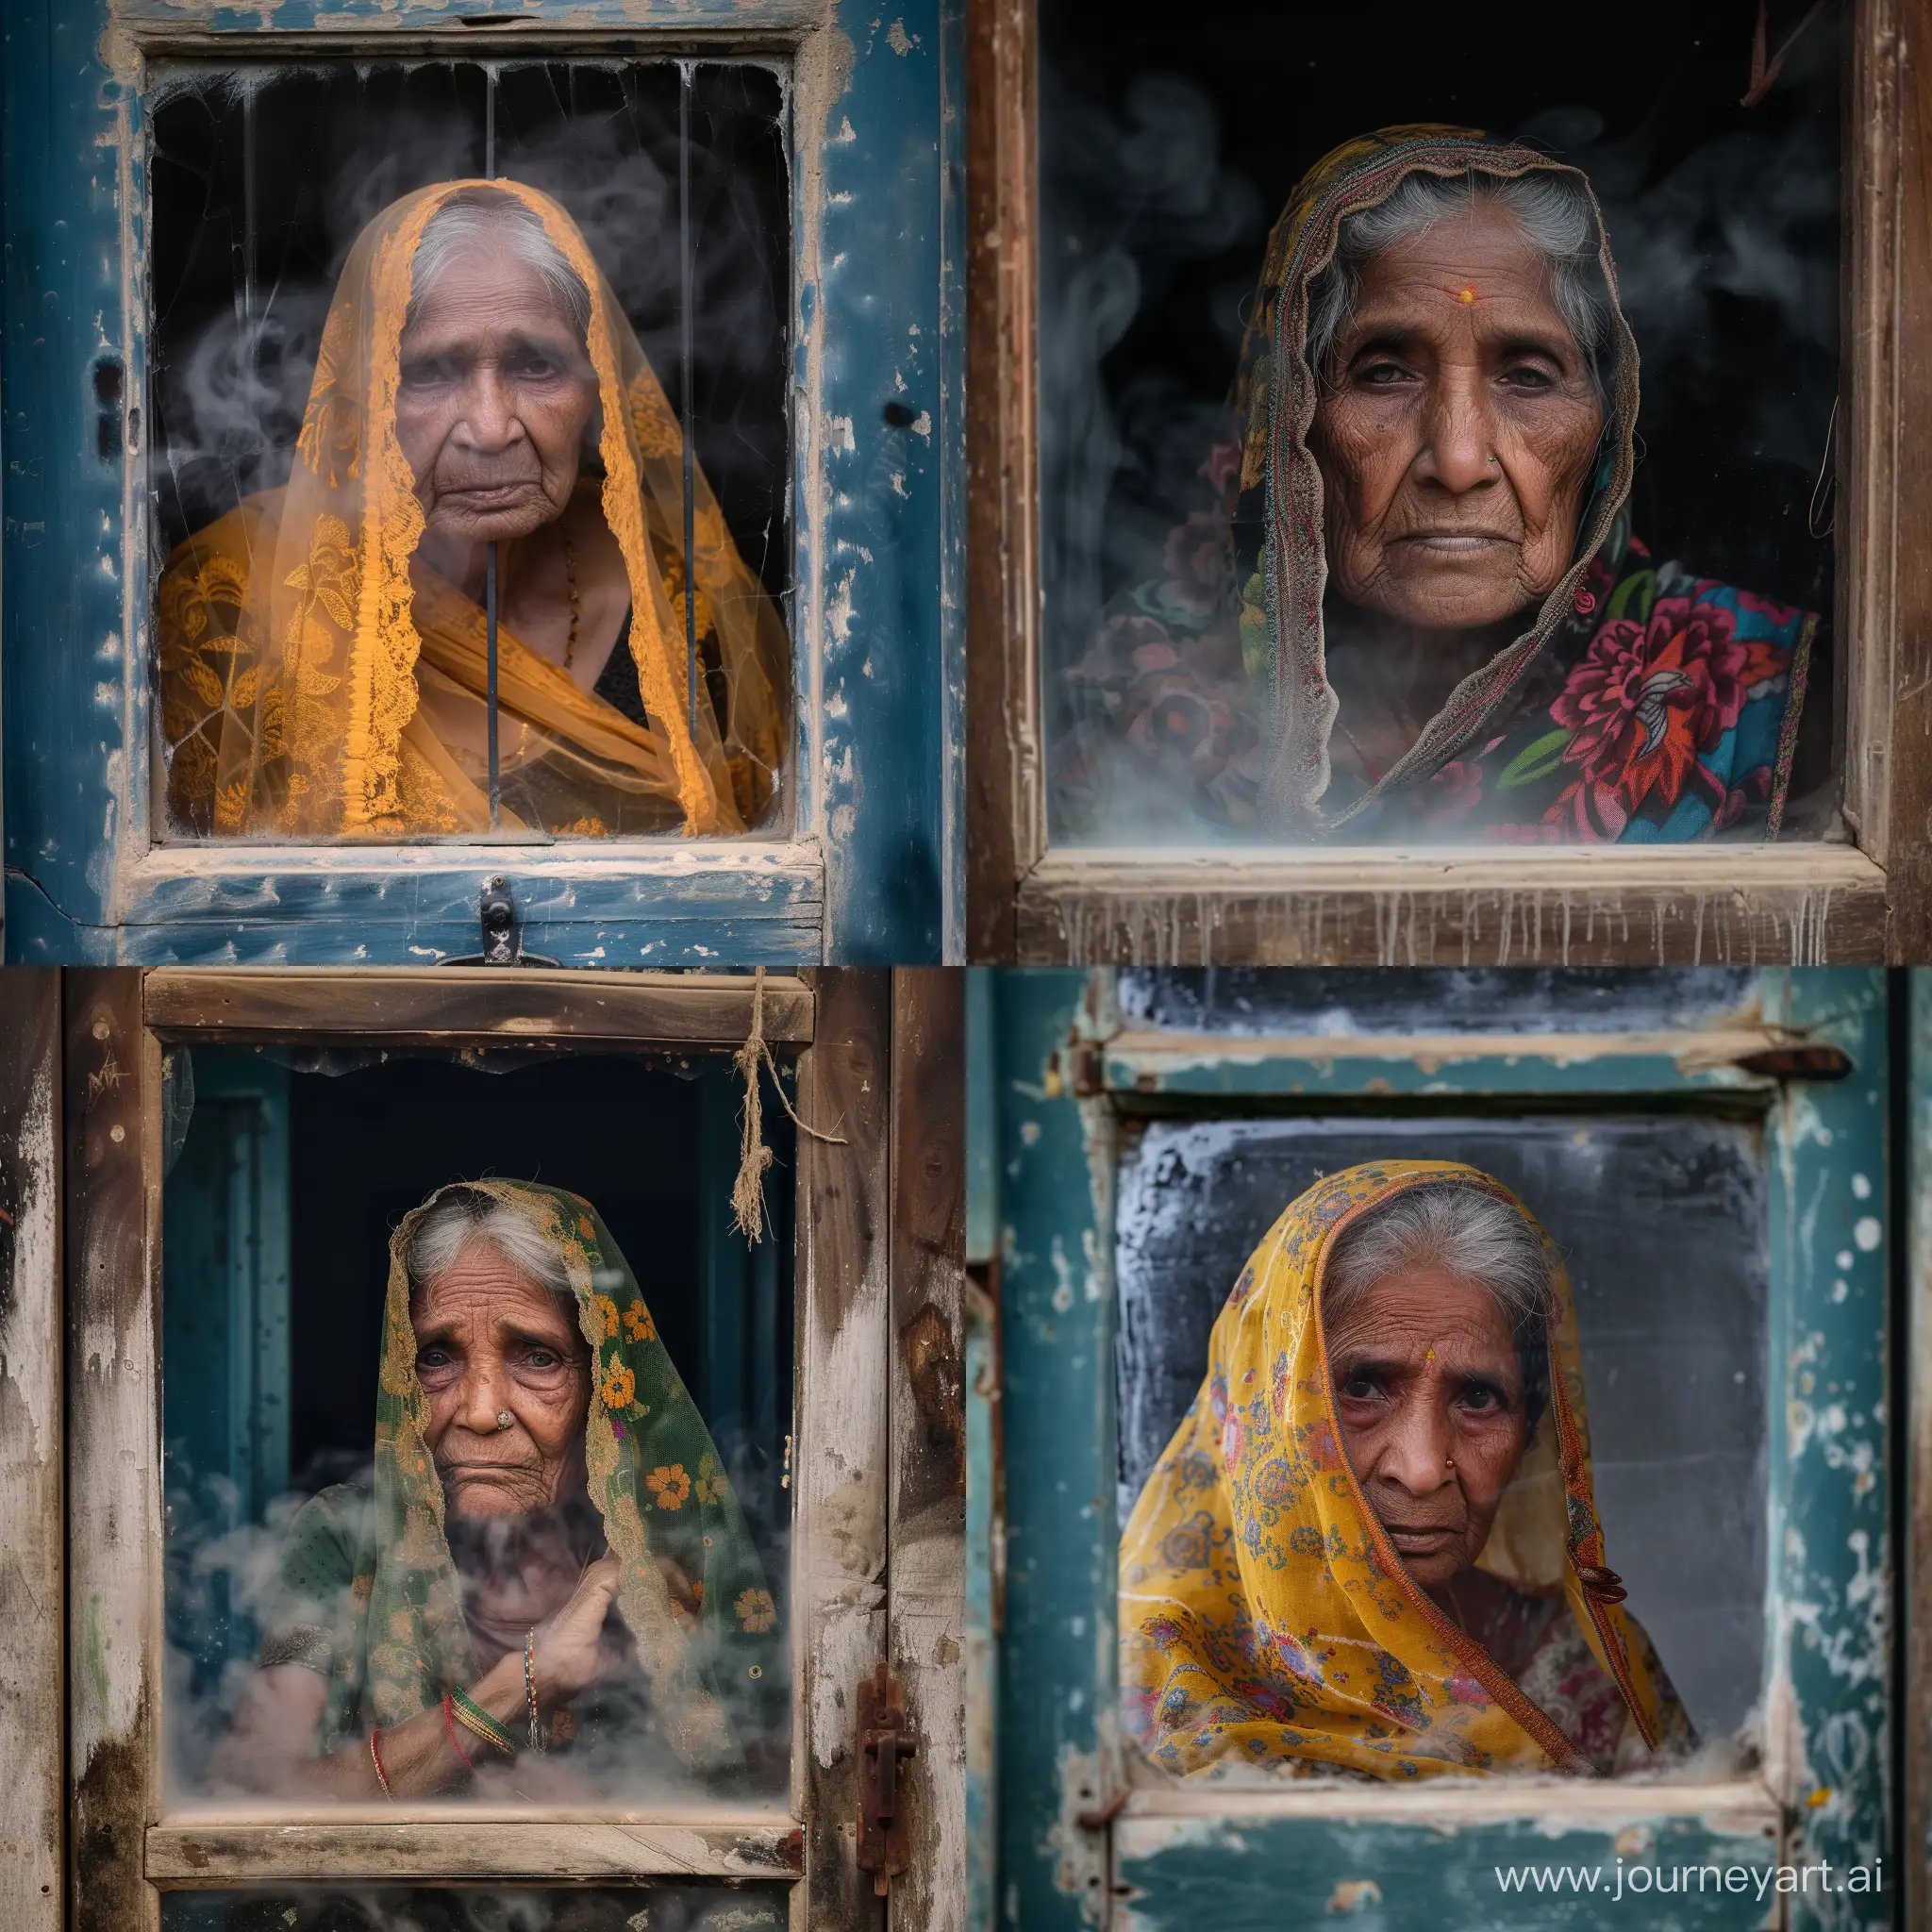 Tribel old women gujarat behind a steamy window portrait 50mm fuji xt3